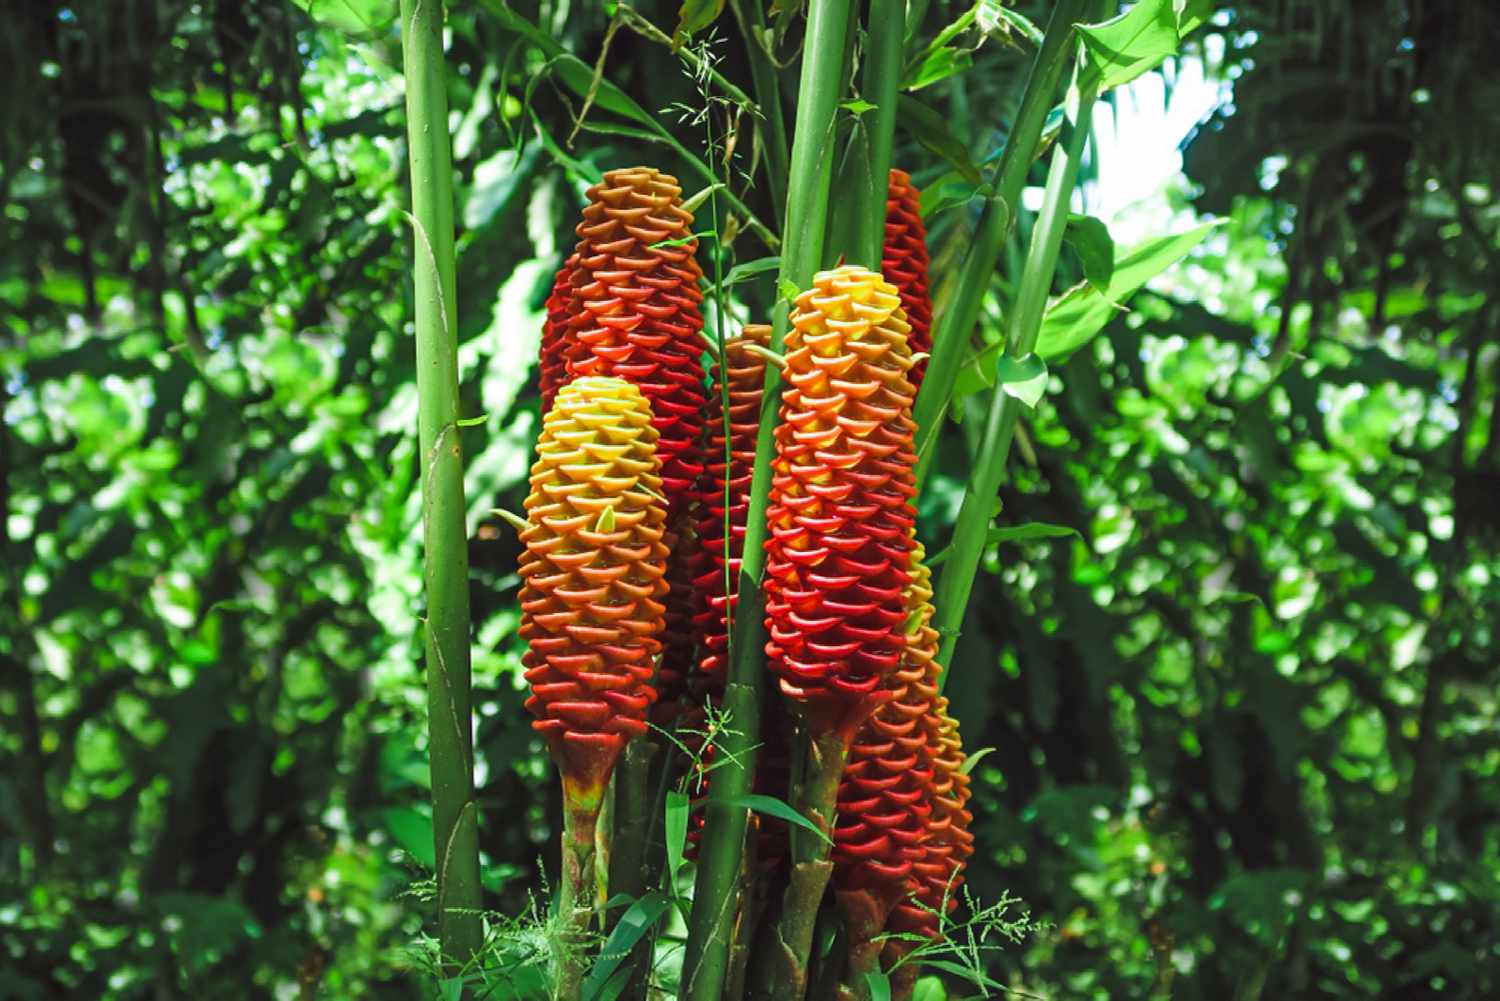 Planta de jengibre colmena con brácteas rojas y amarillas en forma de cono junto a altos tallos verdes